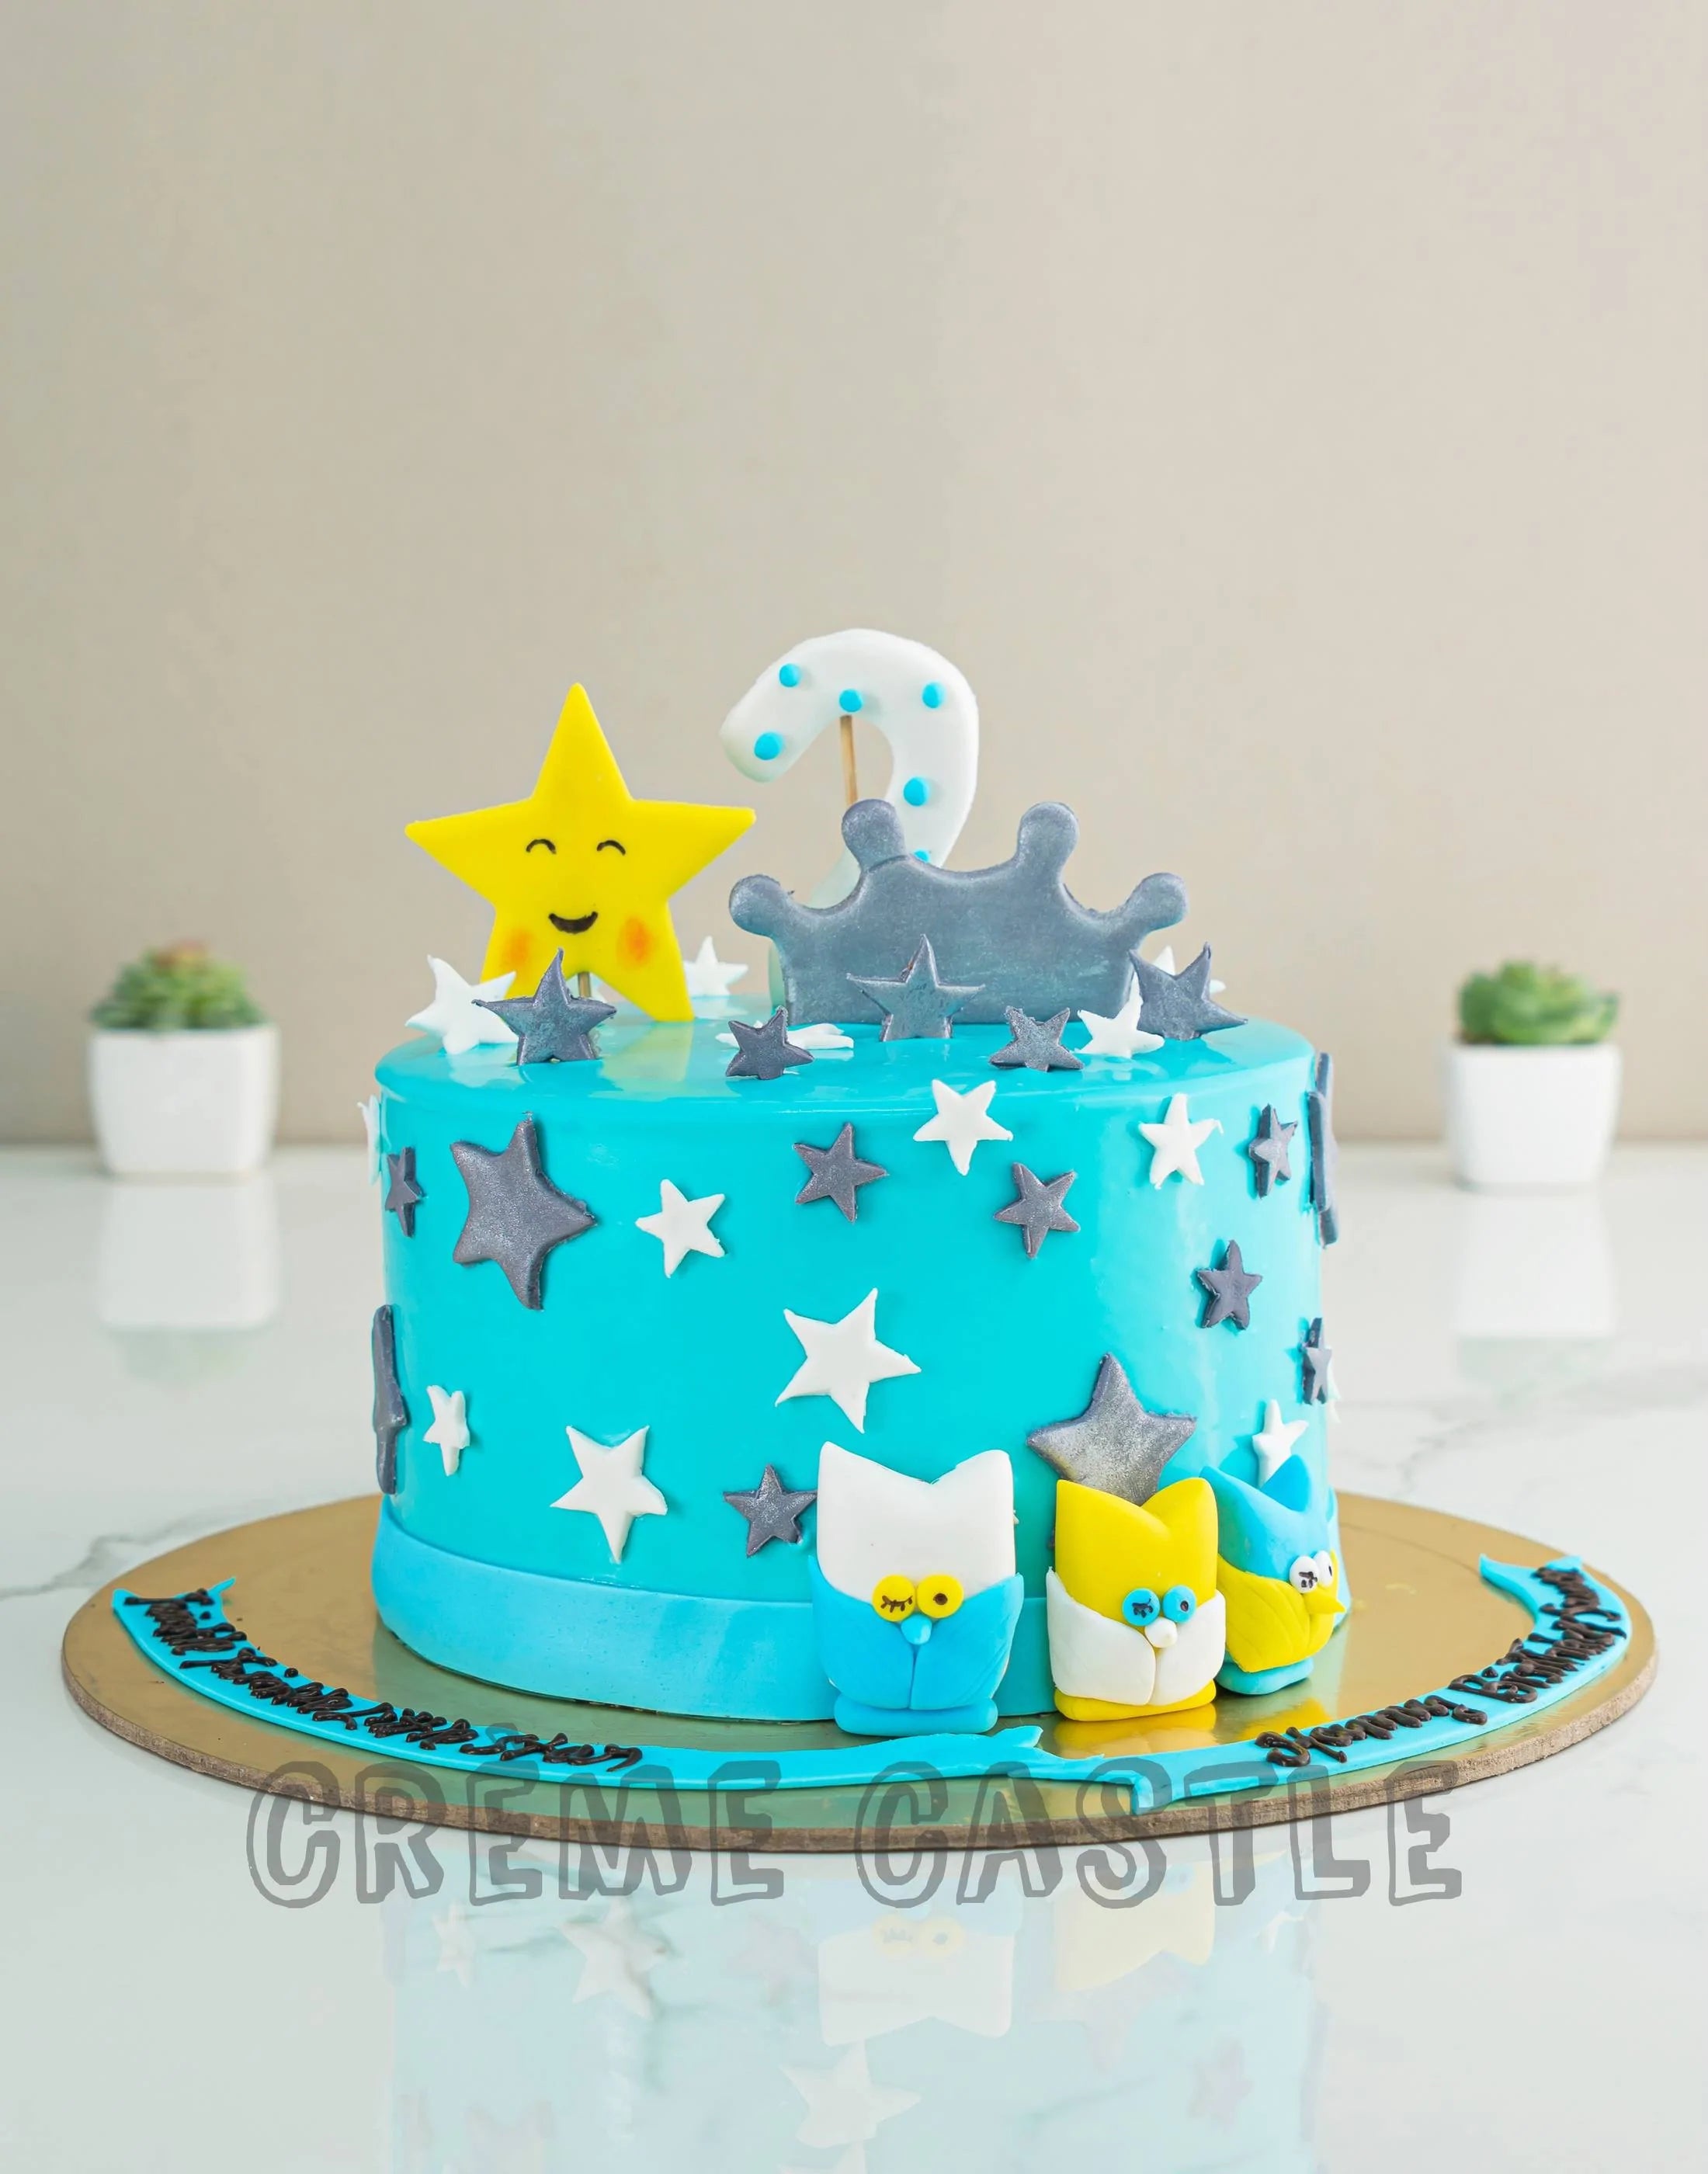 Birthday Cakes For Boys || Top Stylish Blue Cakes || Birthday Decor Ideas  for Boys - YouTube